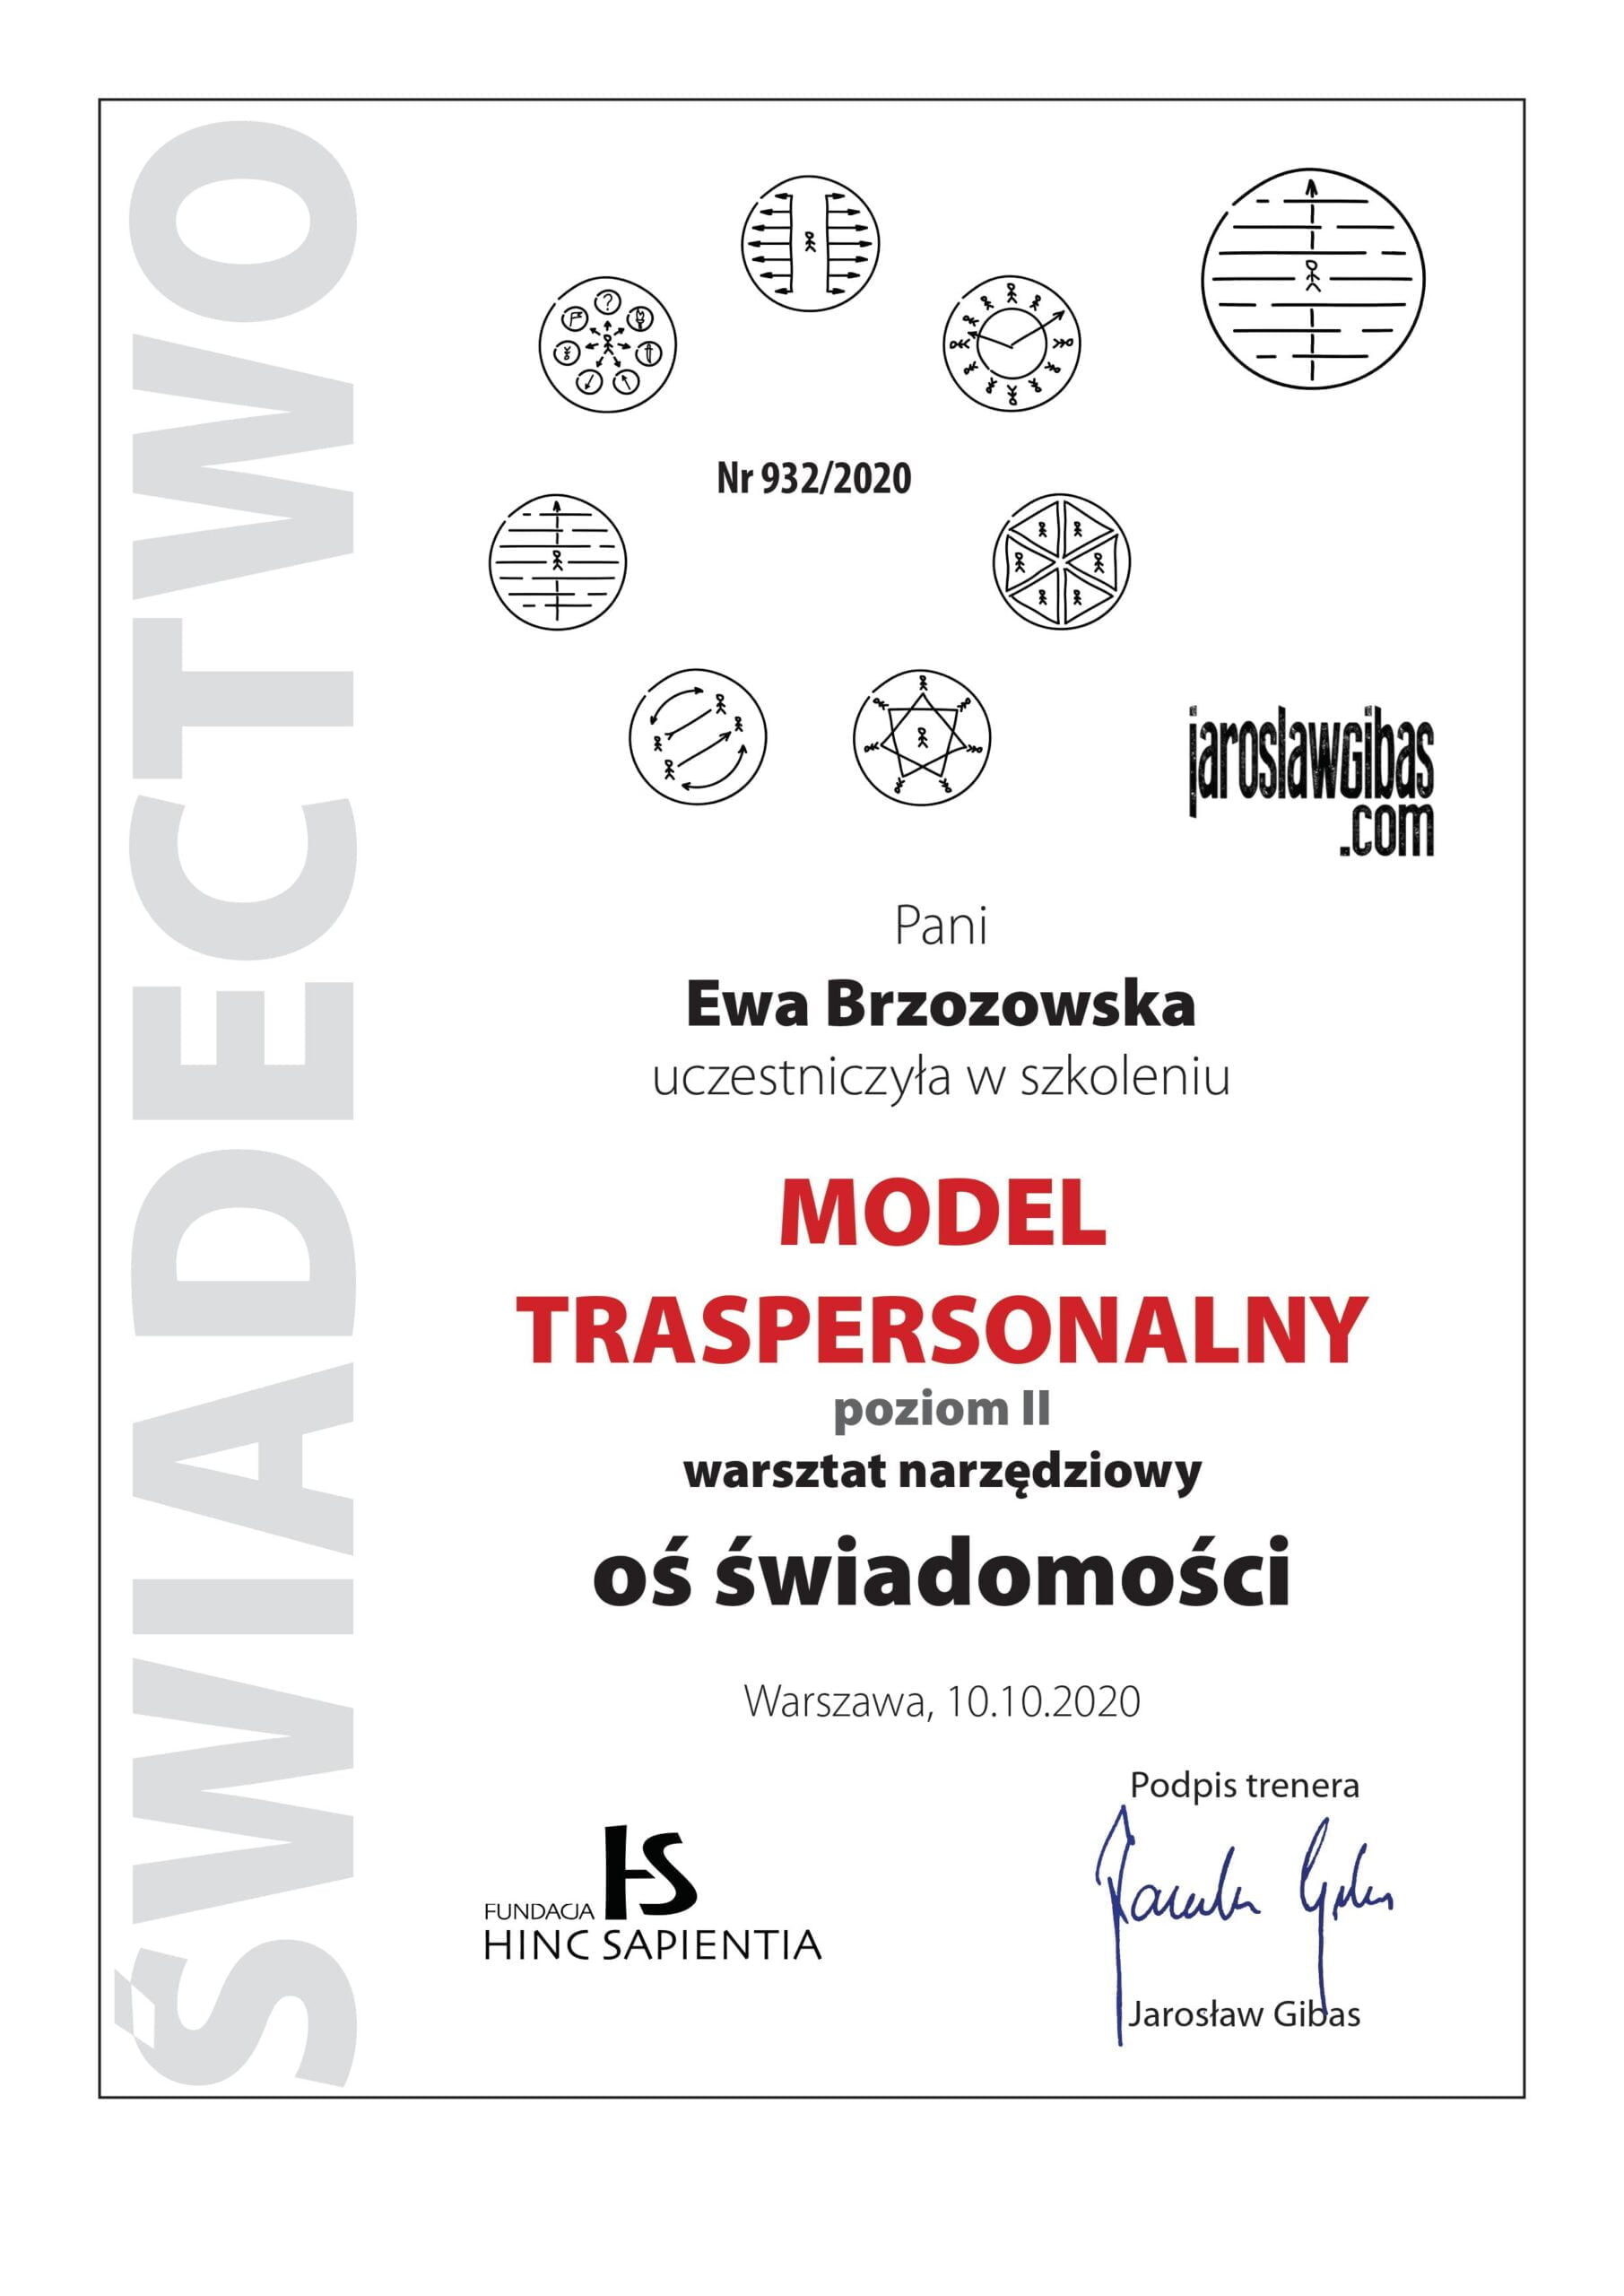 Certyfikat dla Ewy Brzozowskiej za udział w szkoleniu Transpersonalny Model Zmian Oś świadomości